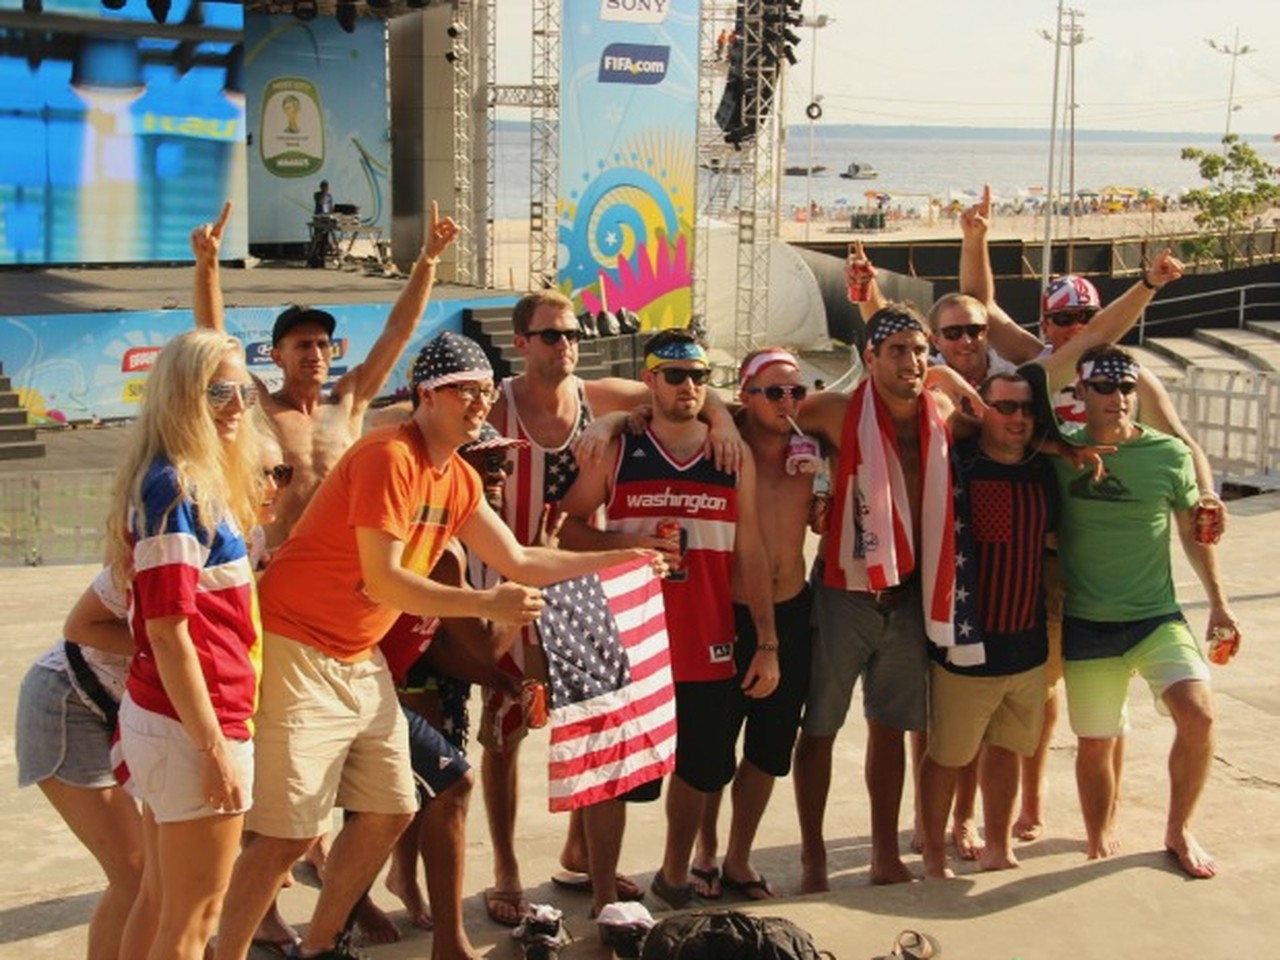 Americanos compareceram em peso na Fan Fest de Manaus, na Copa do Mundo no Brasil — Foto: Marcos Dantas/G1 AM